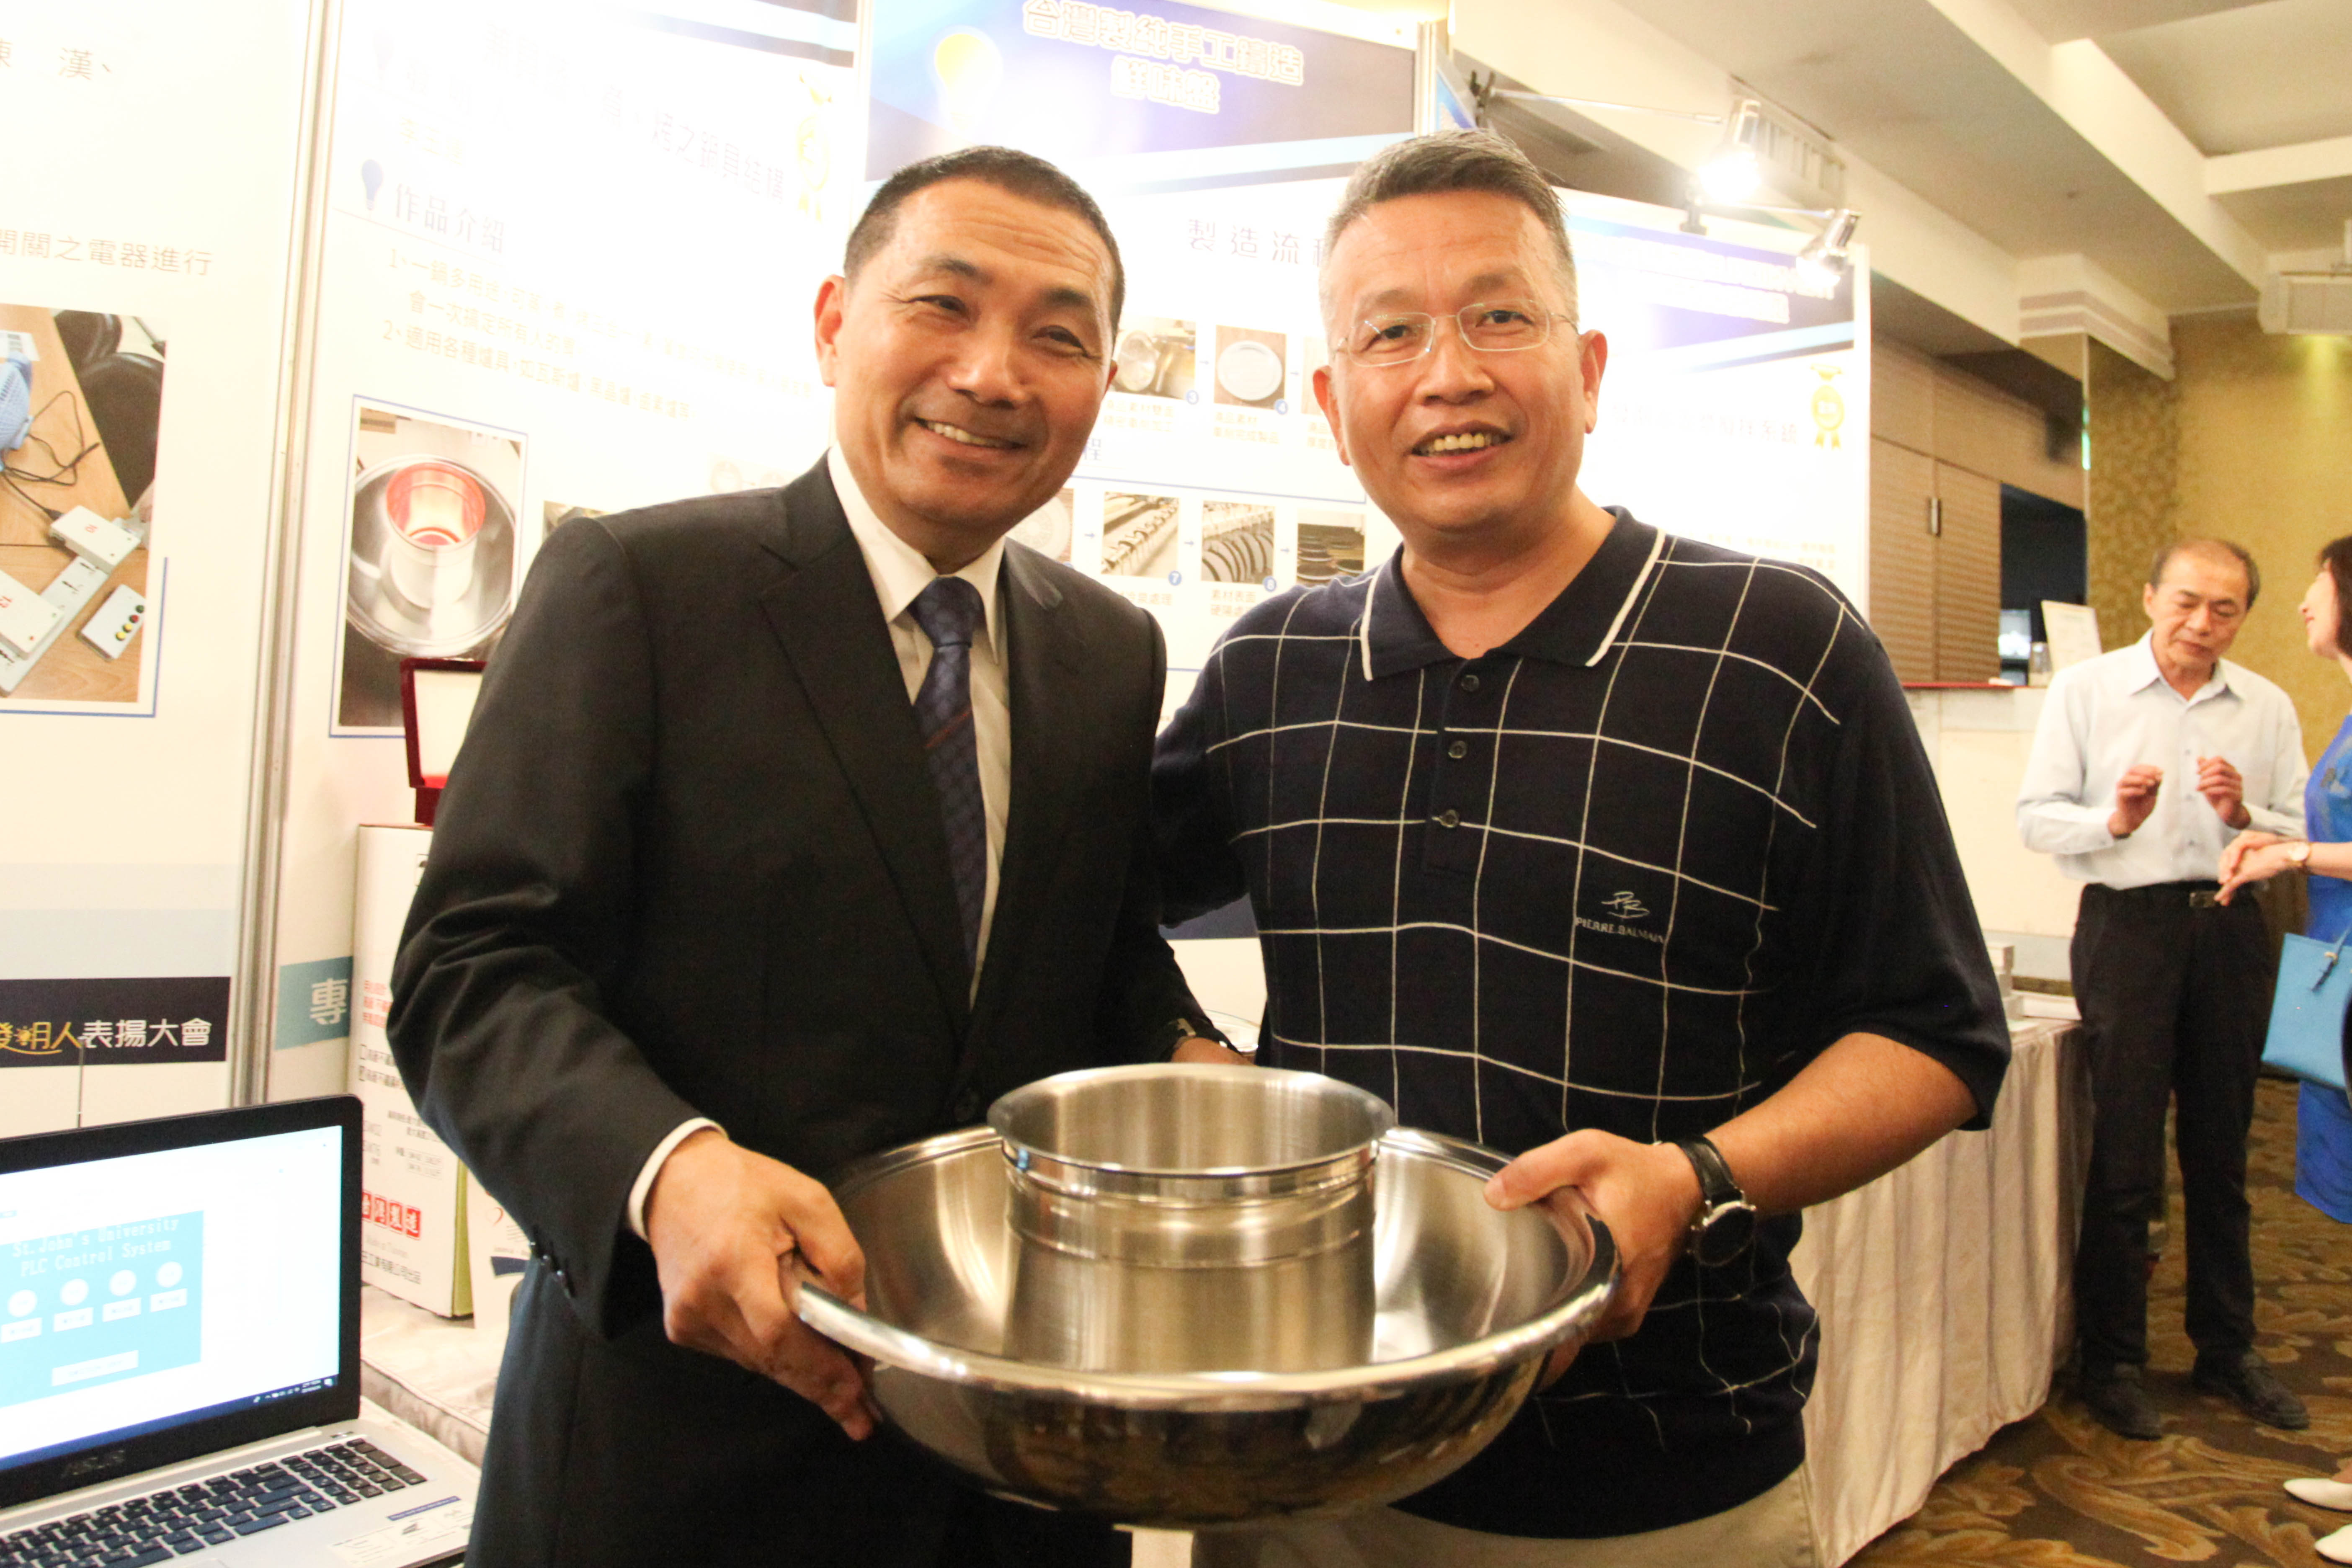 新北市長侯友宜(左)參觀榮獲克羅埃西亞INOVA國際發明展金牌的蒸、煮、烤鍋具